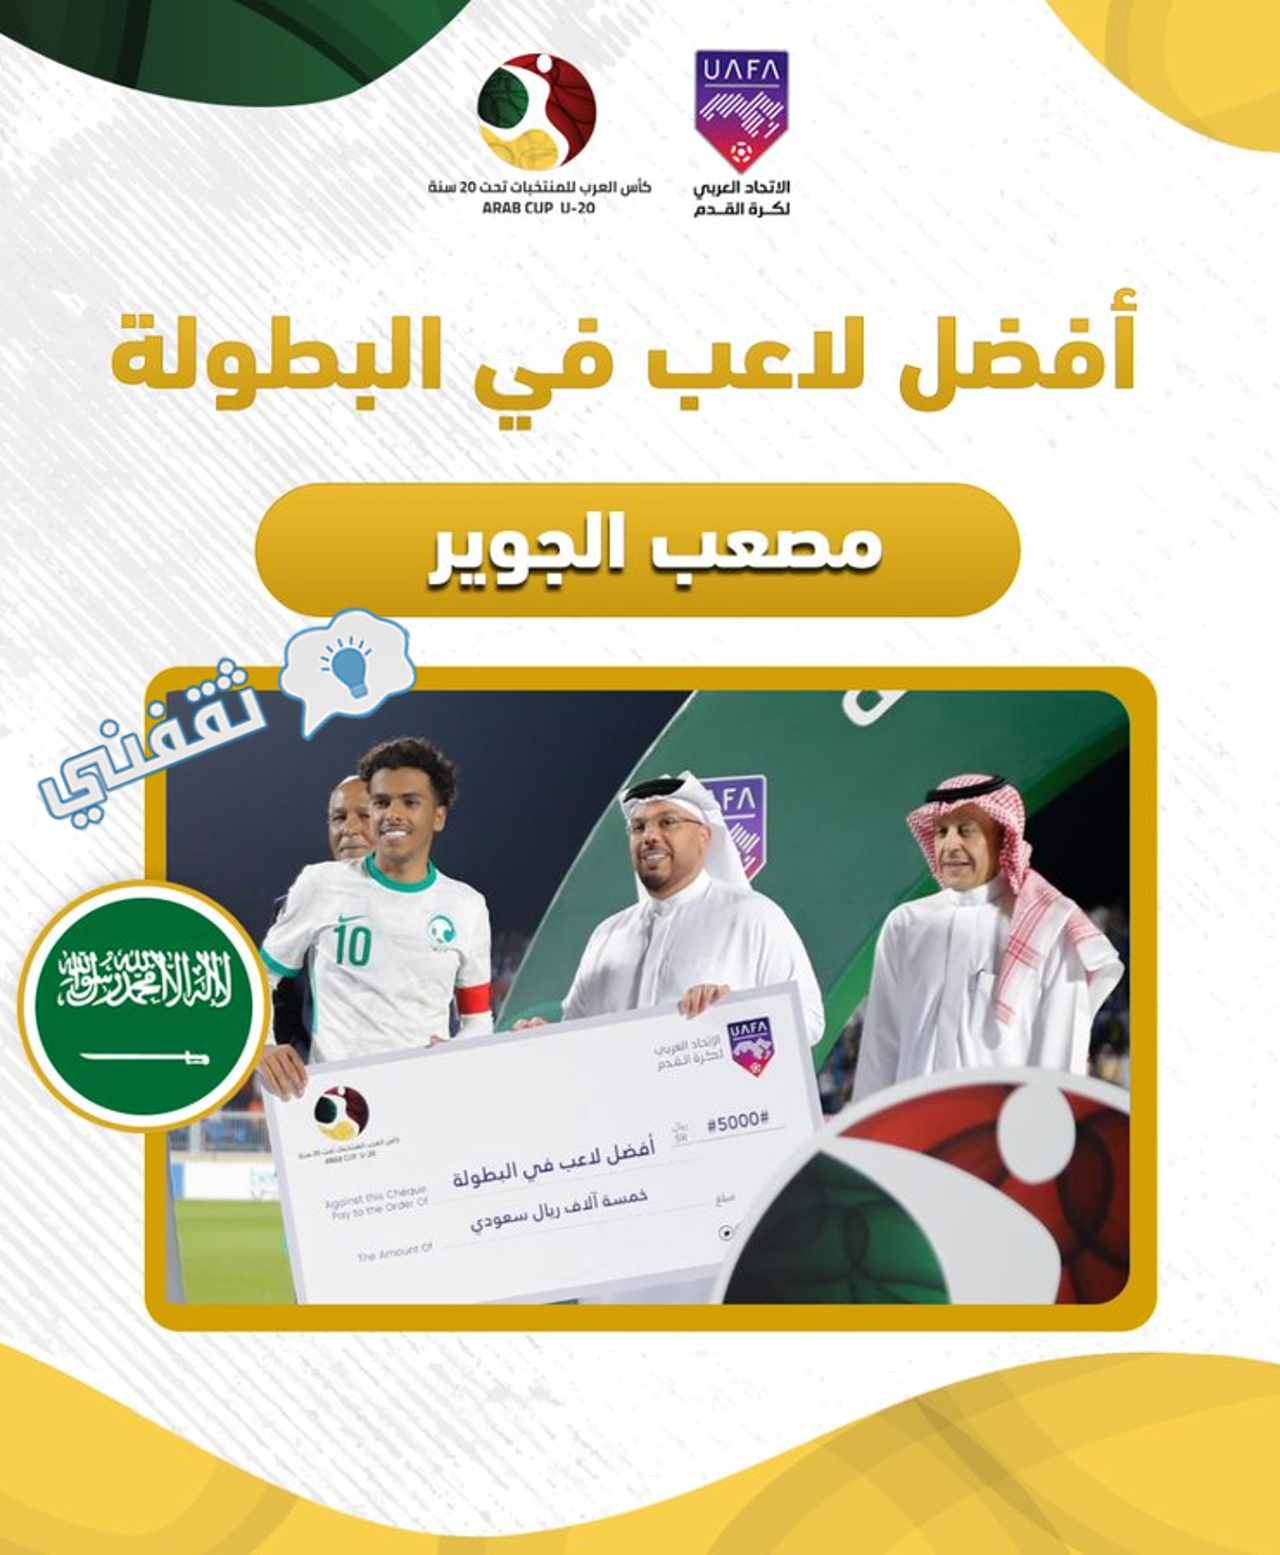 فوز مصعب الجوير قائد المنتخب السعودي بجائزة أفضل لاعب في بطولة كأس العرب للشباب 2022